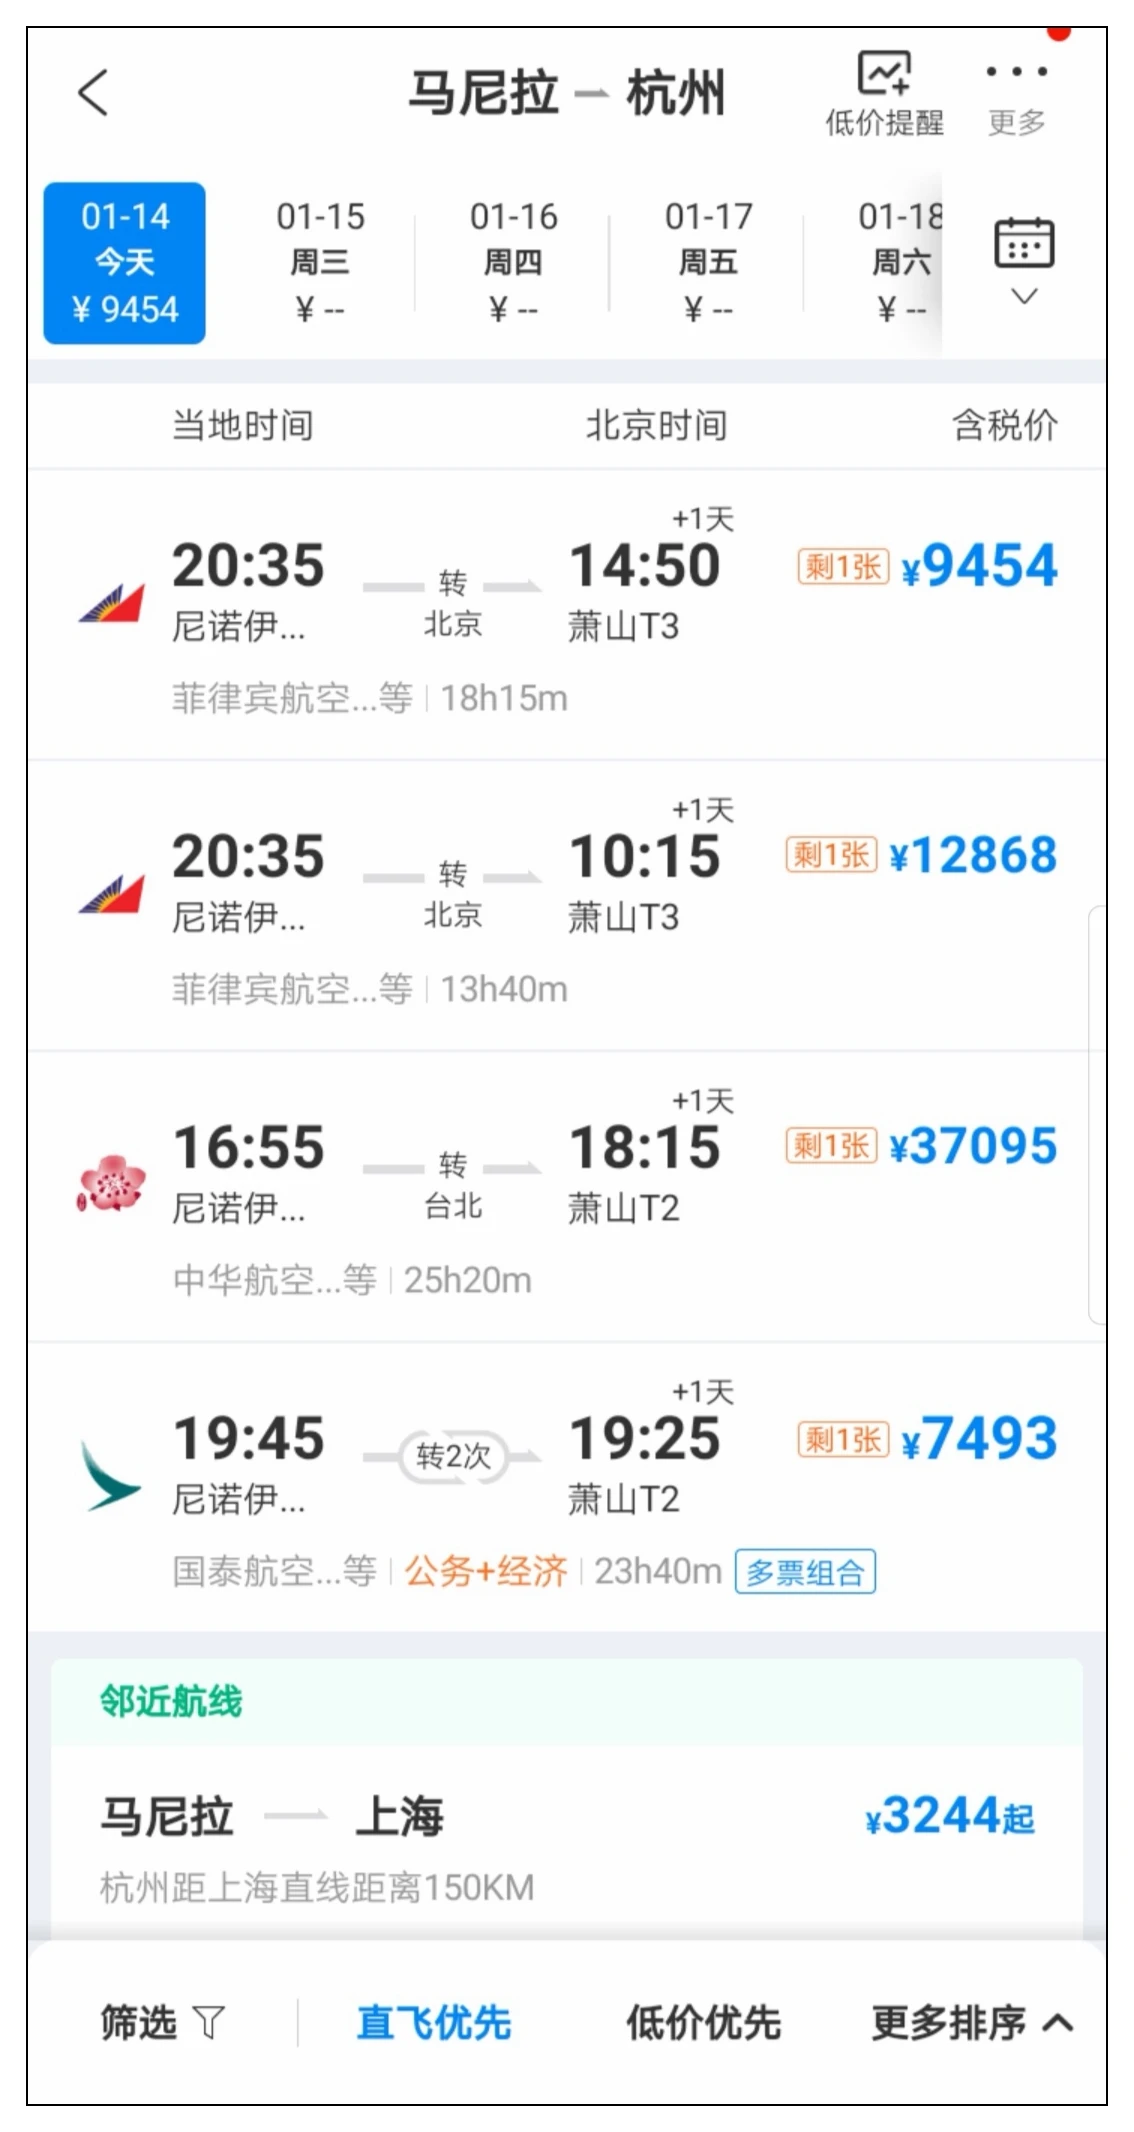 机票哪里订最便宜_如何订便宜机票_去泰国机票在哪订便宜